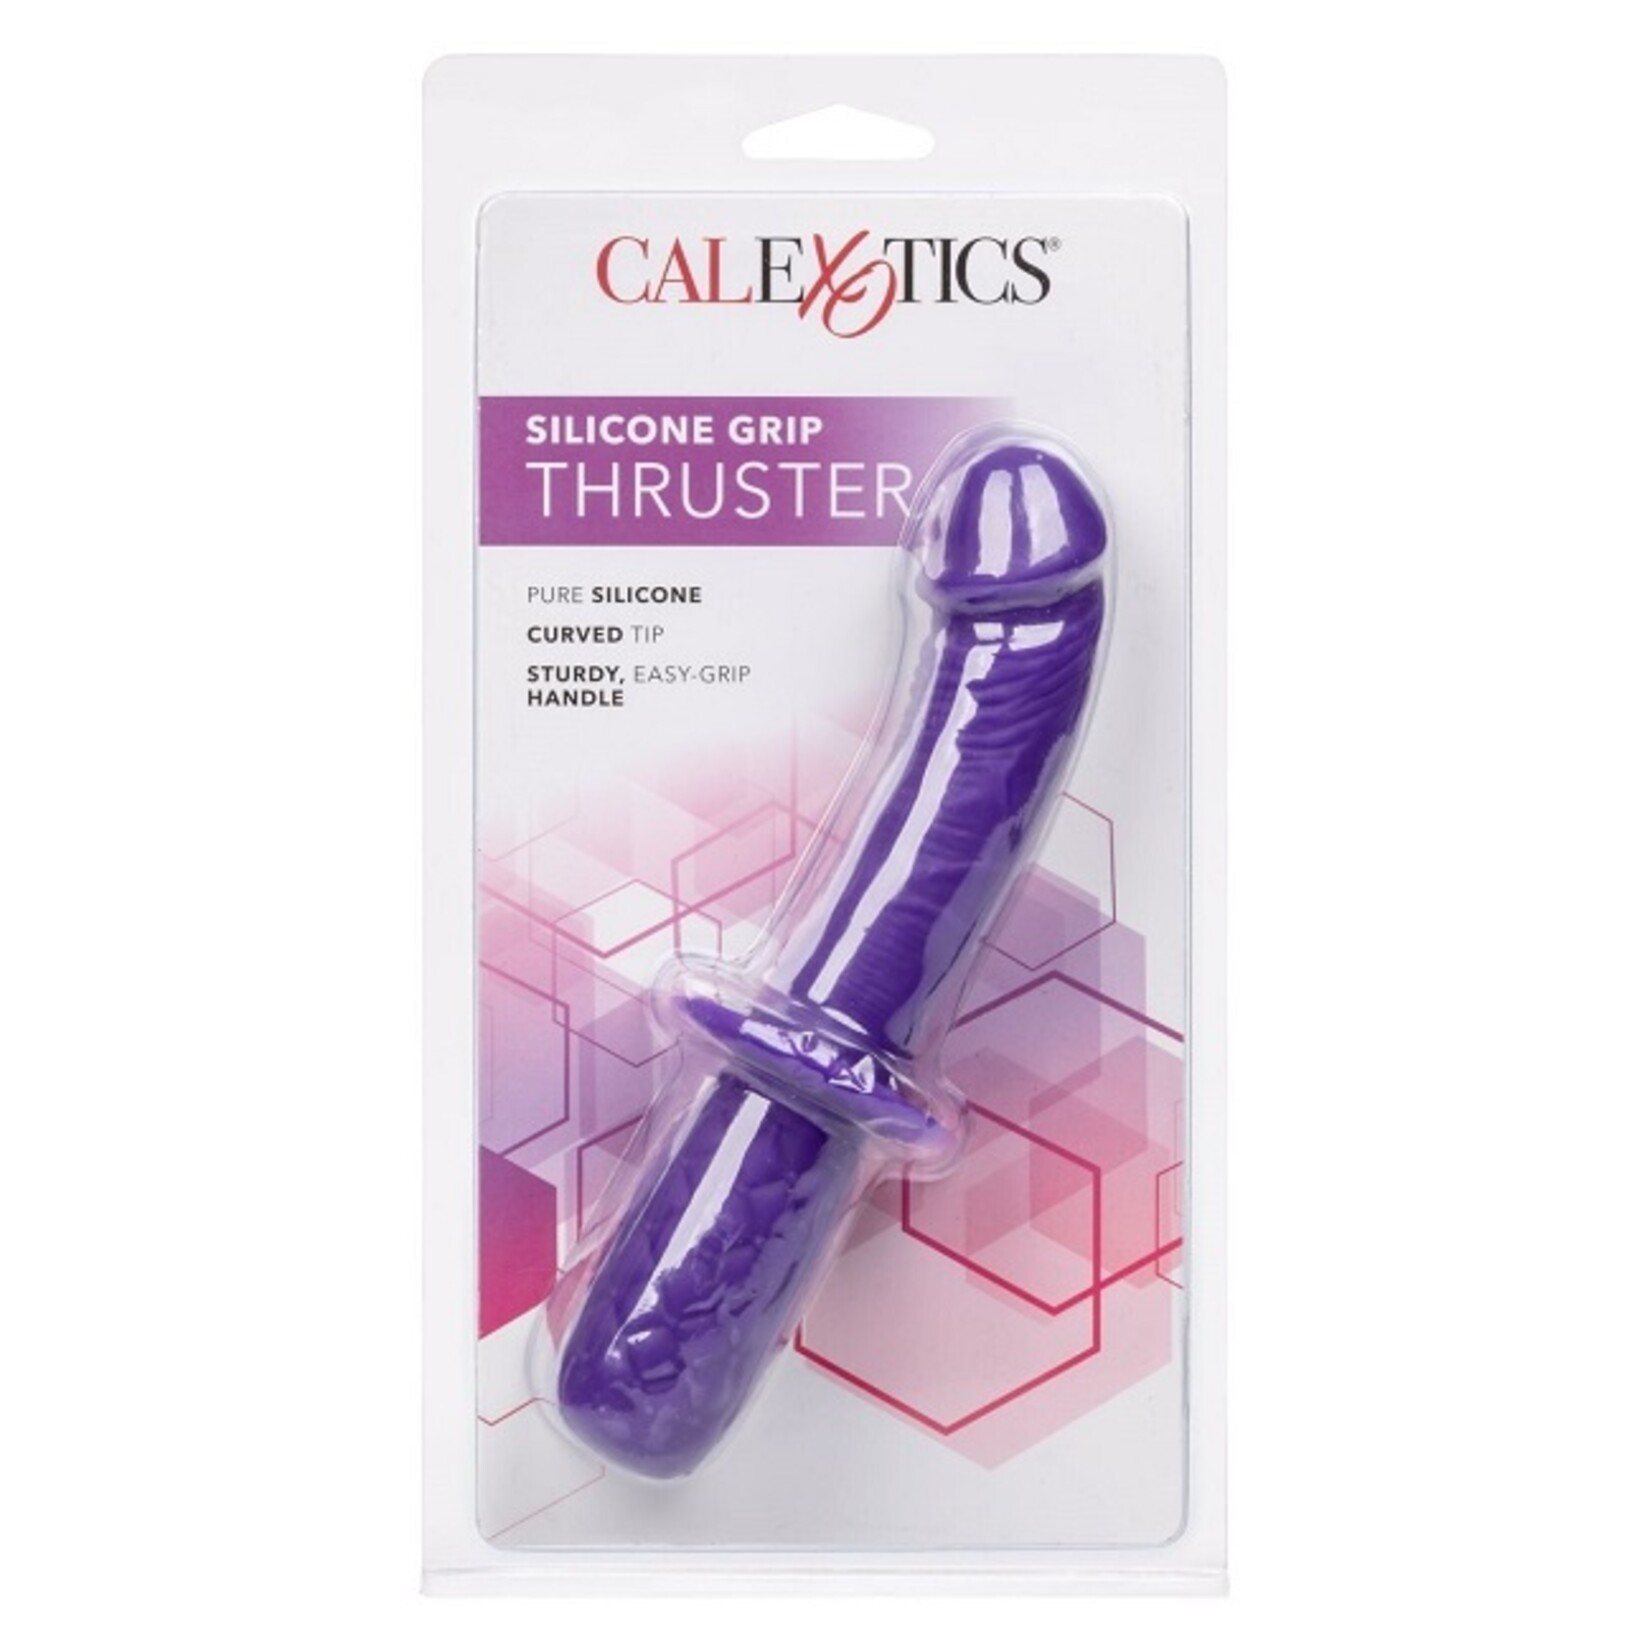 CalExotics Silicone Grip Thruster